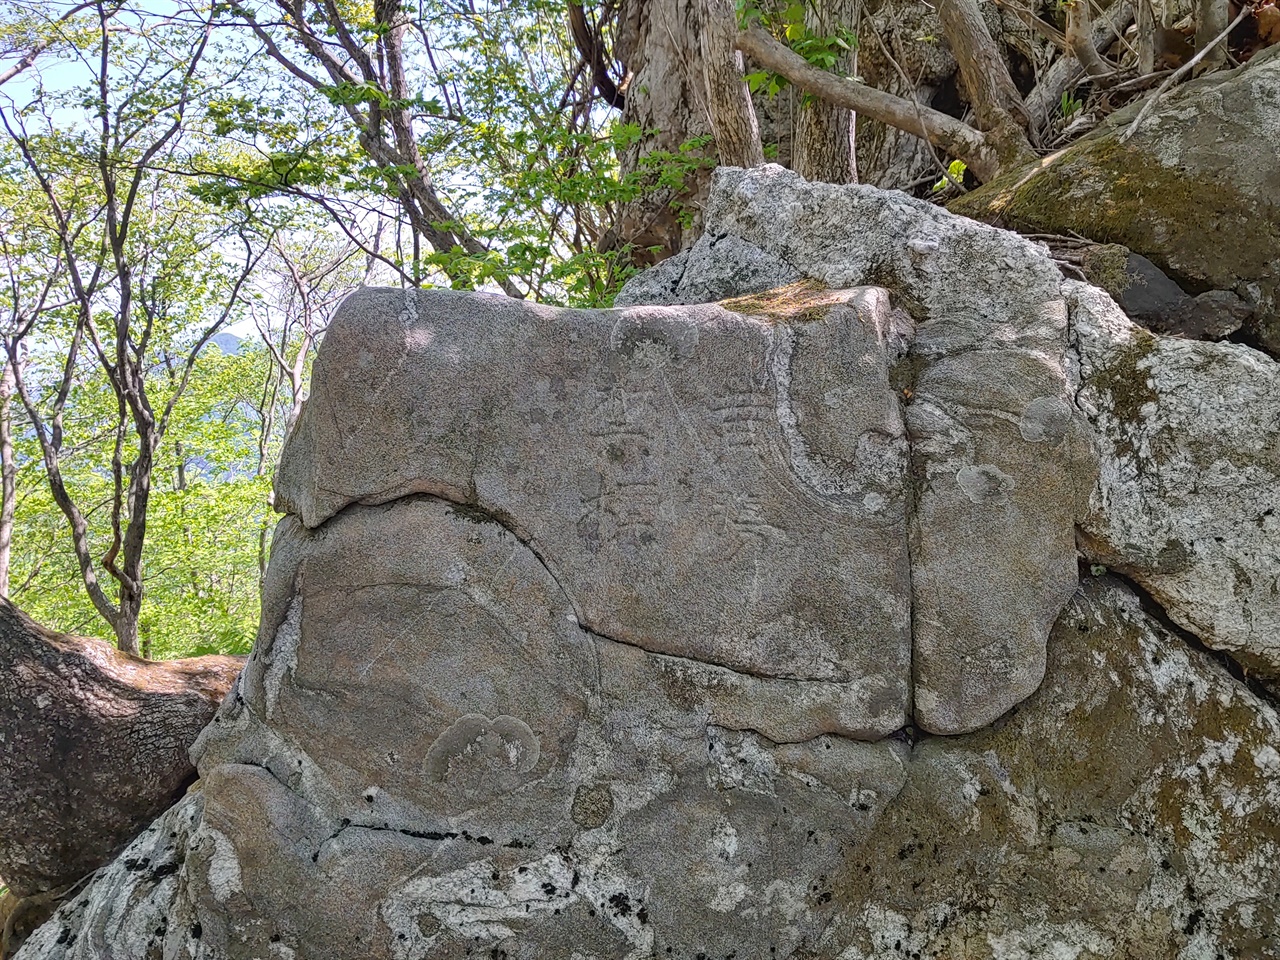 3기의 황장금표 중 가장 늦게 발견된 금표로, 치악산과 구룡사 일대가 황장봉산으로 지정된 사실을 보여준다.